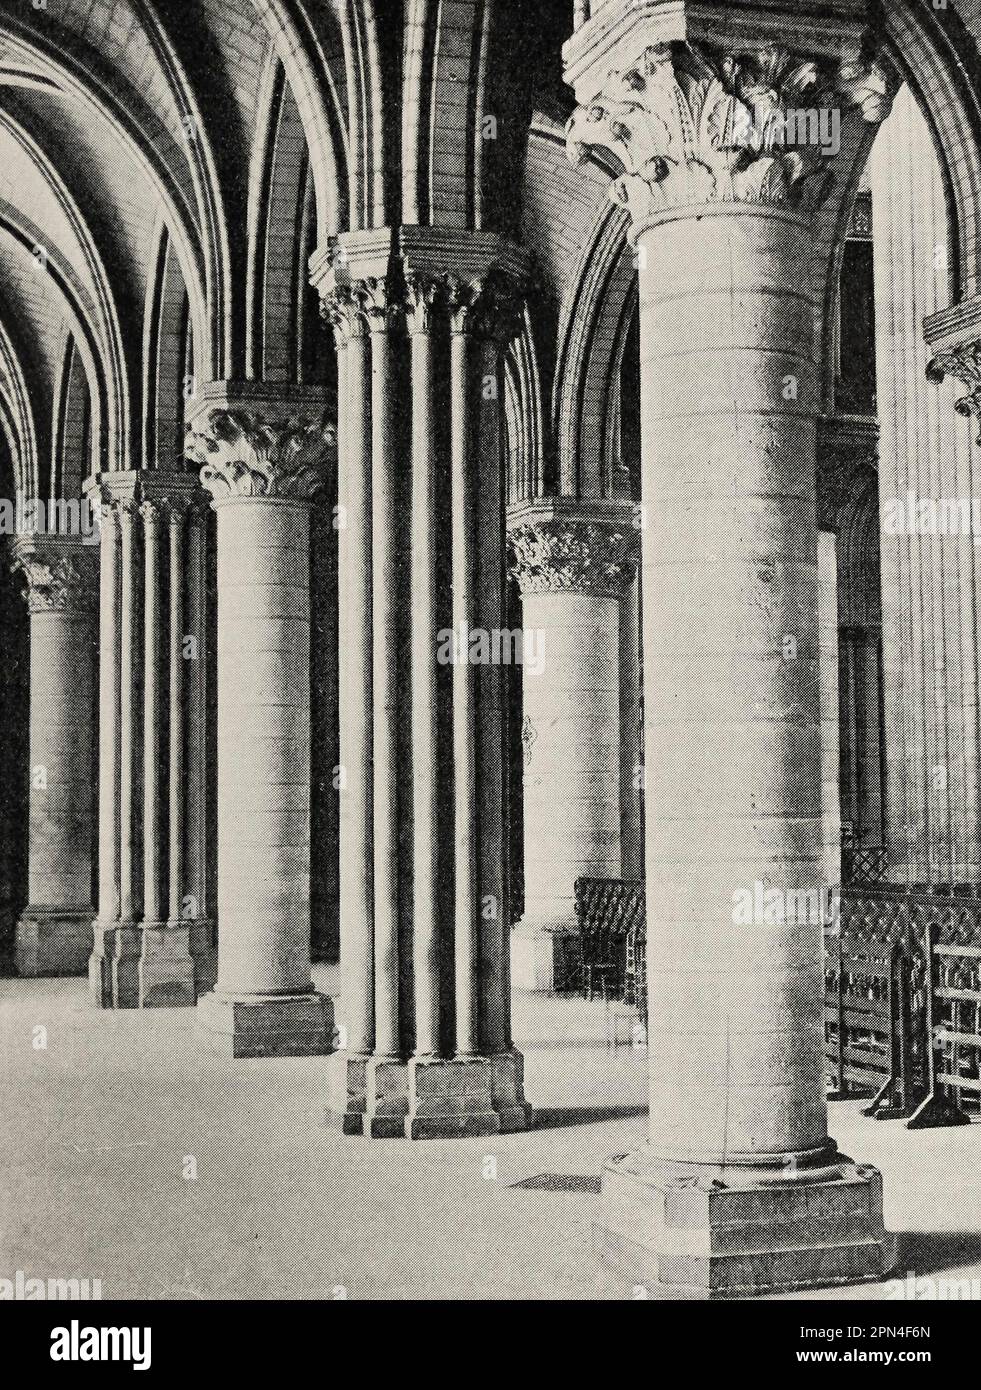 Allées nord de la Nave, Cathédrale notre Dame, Paris, France, vers 1900 Banque D'Images